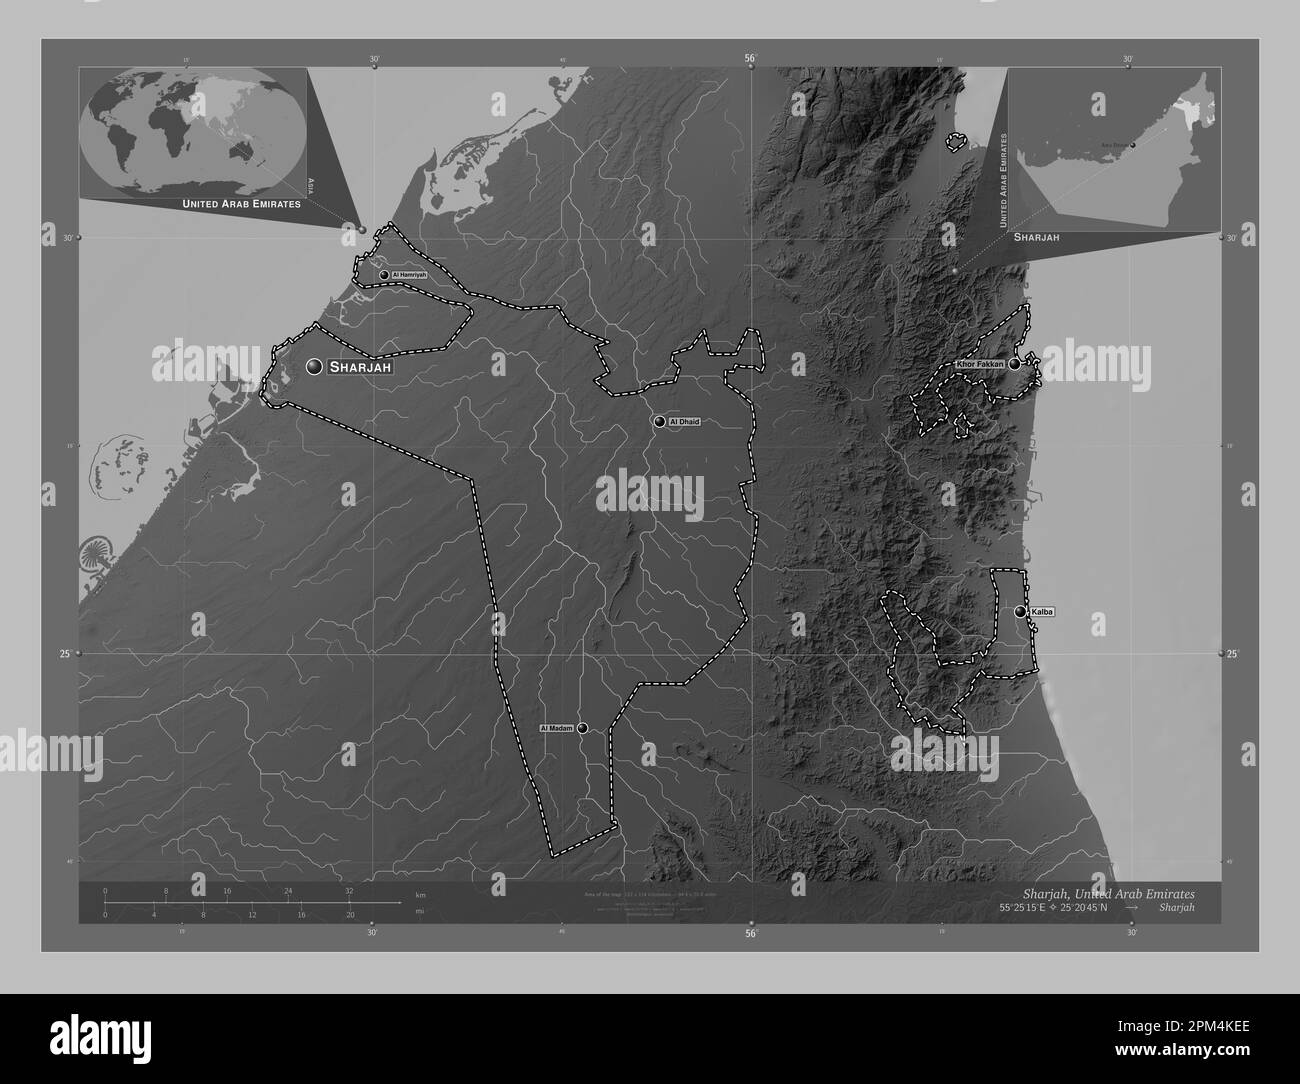 Sharjah, emirato degli Emirati Arabi Uniti. Mappa in scala di grigi con laghi e fiumi. Località e nomi delle principali città della regione. Aux. D'angolo Foto Stock